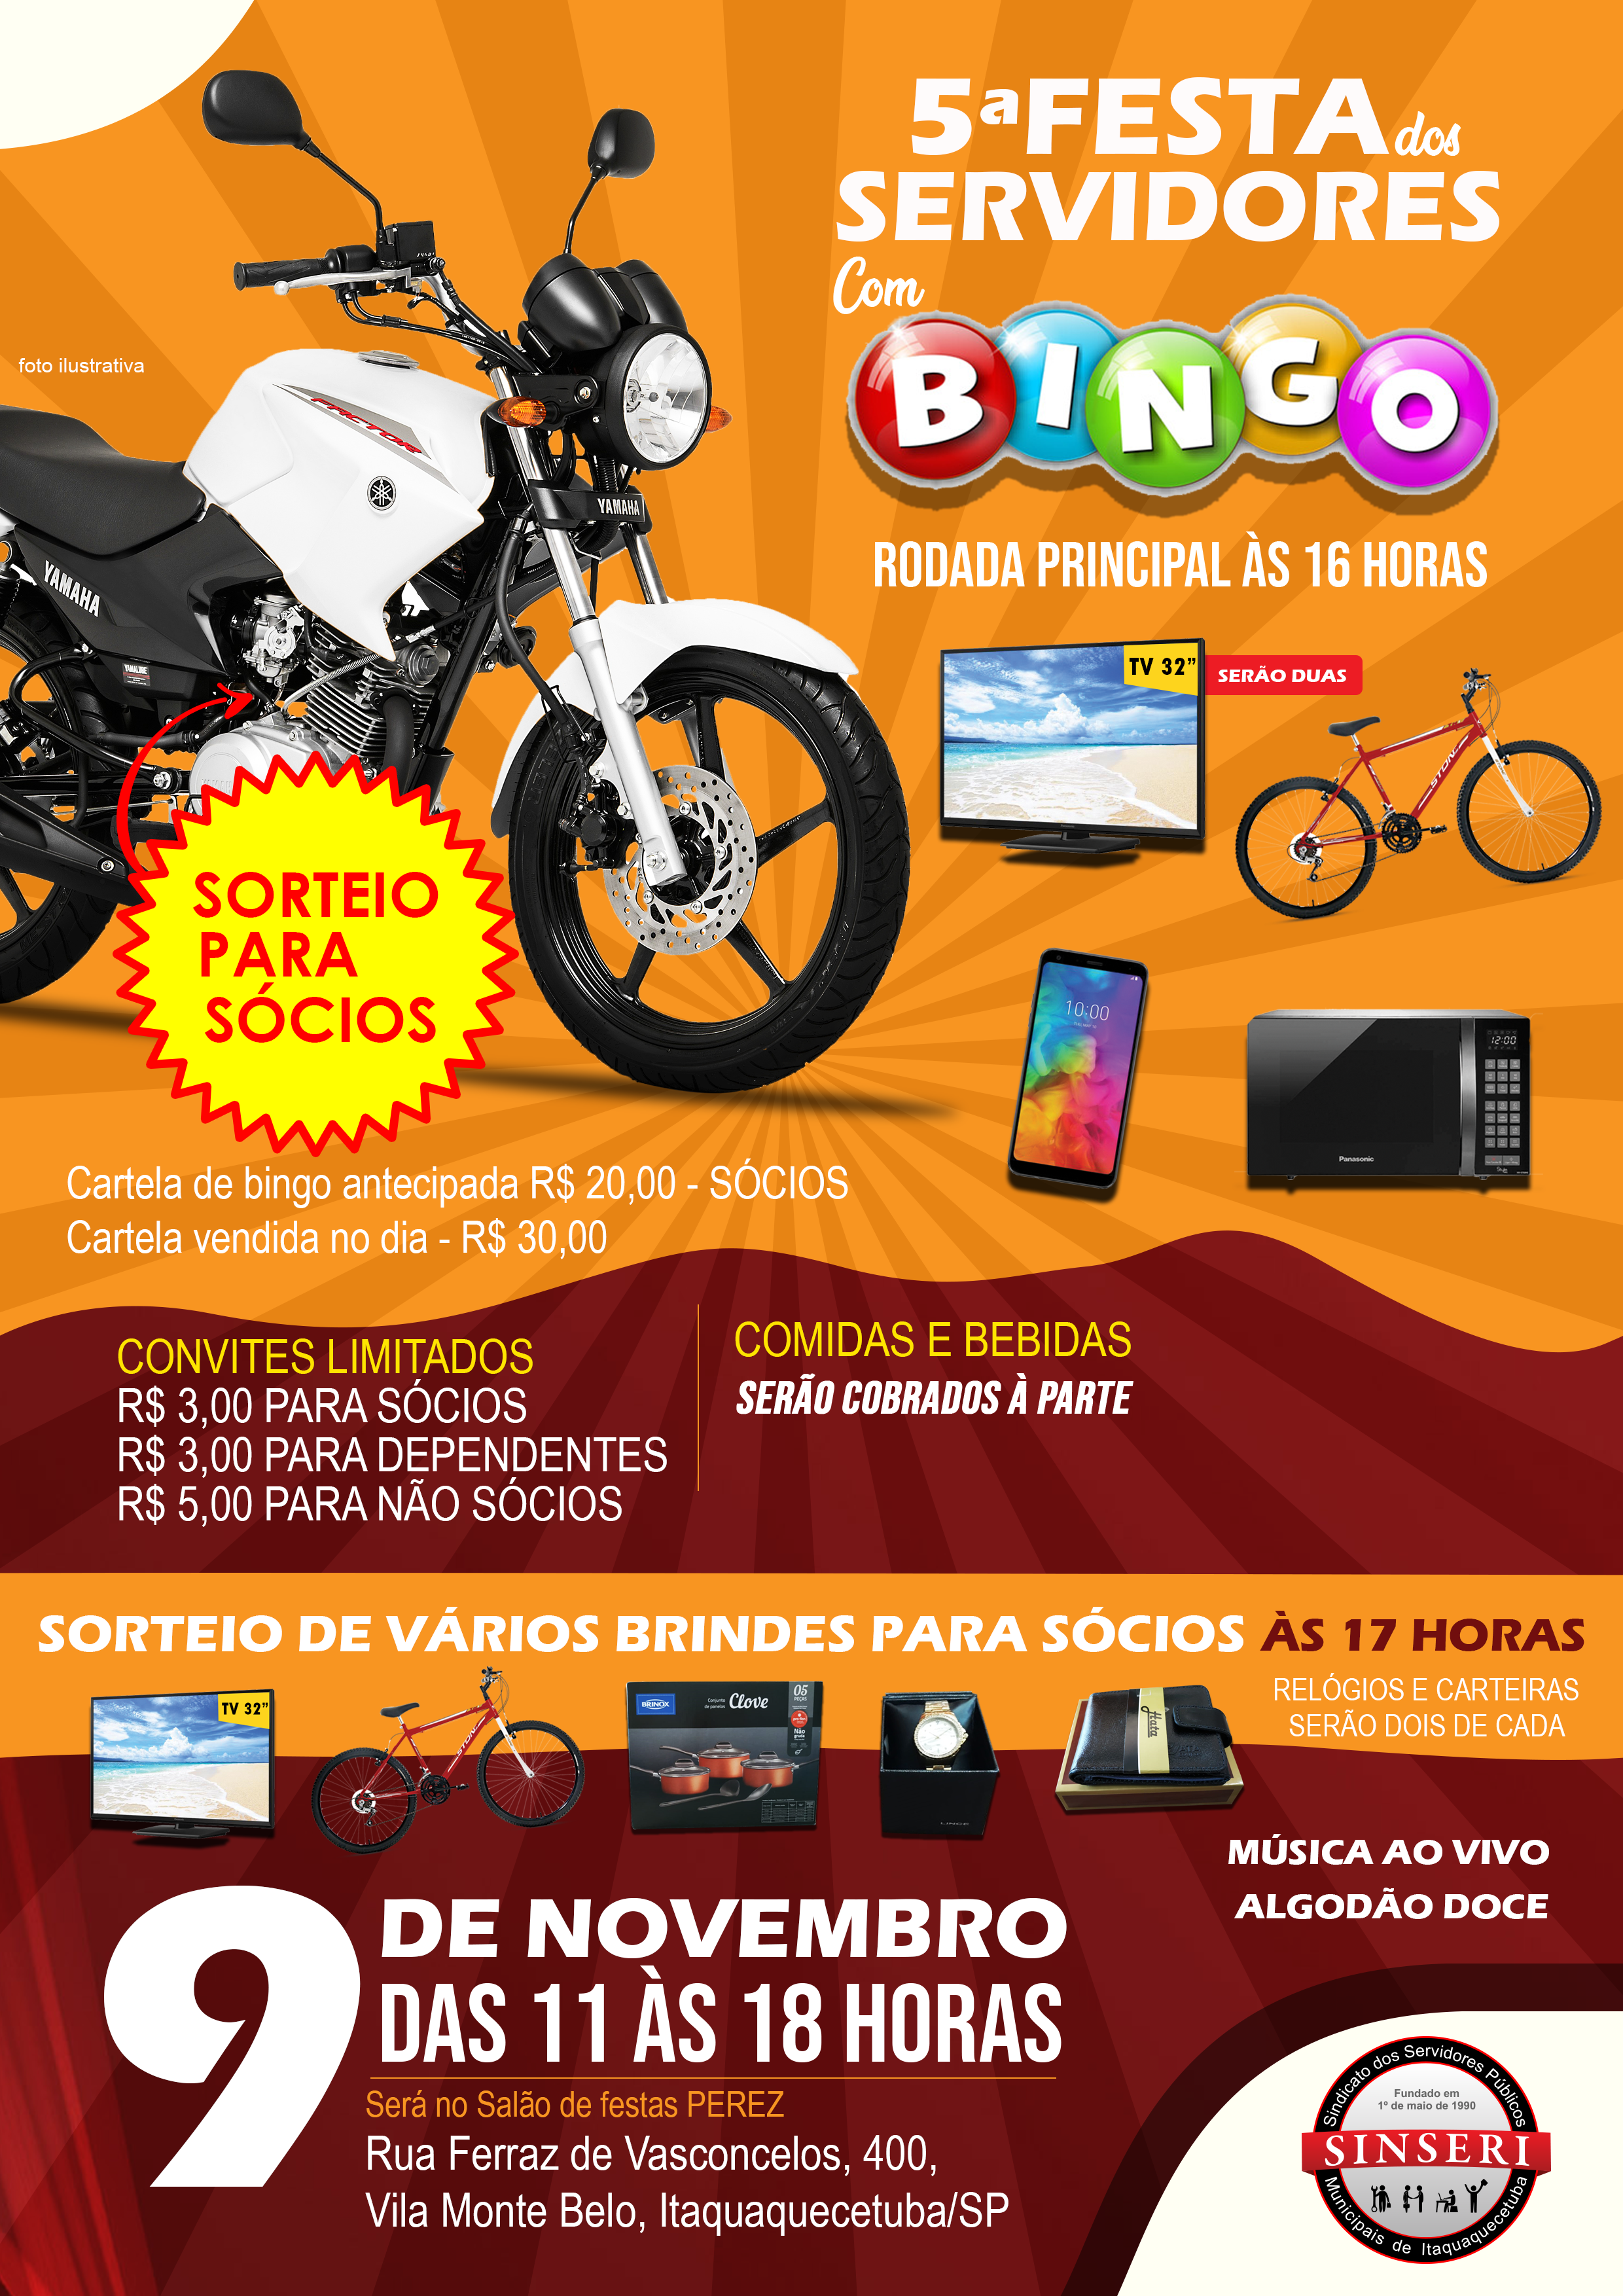 Festa do Servidor sorteará Moto, TV, Bicicleta, Relógio, Carteira